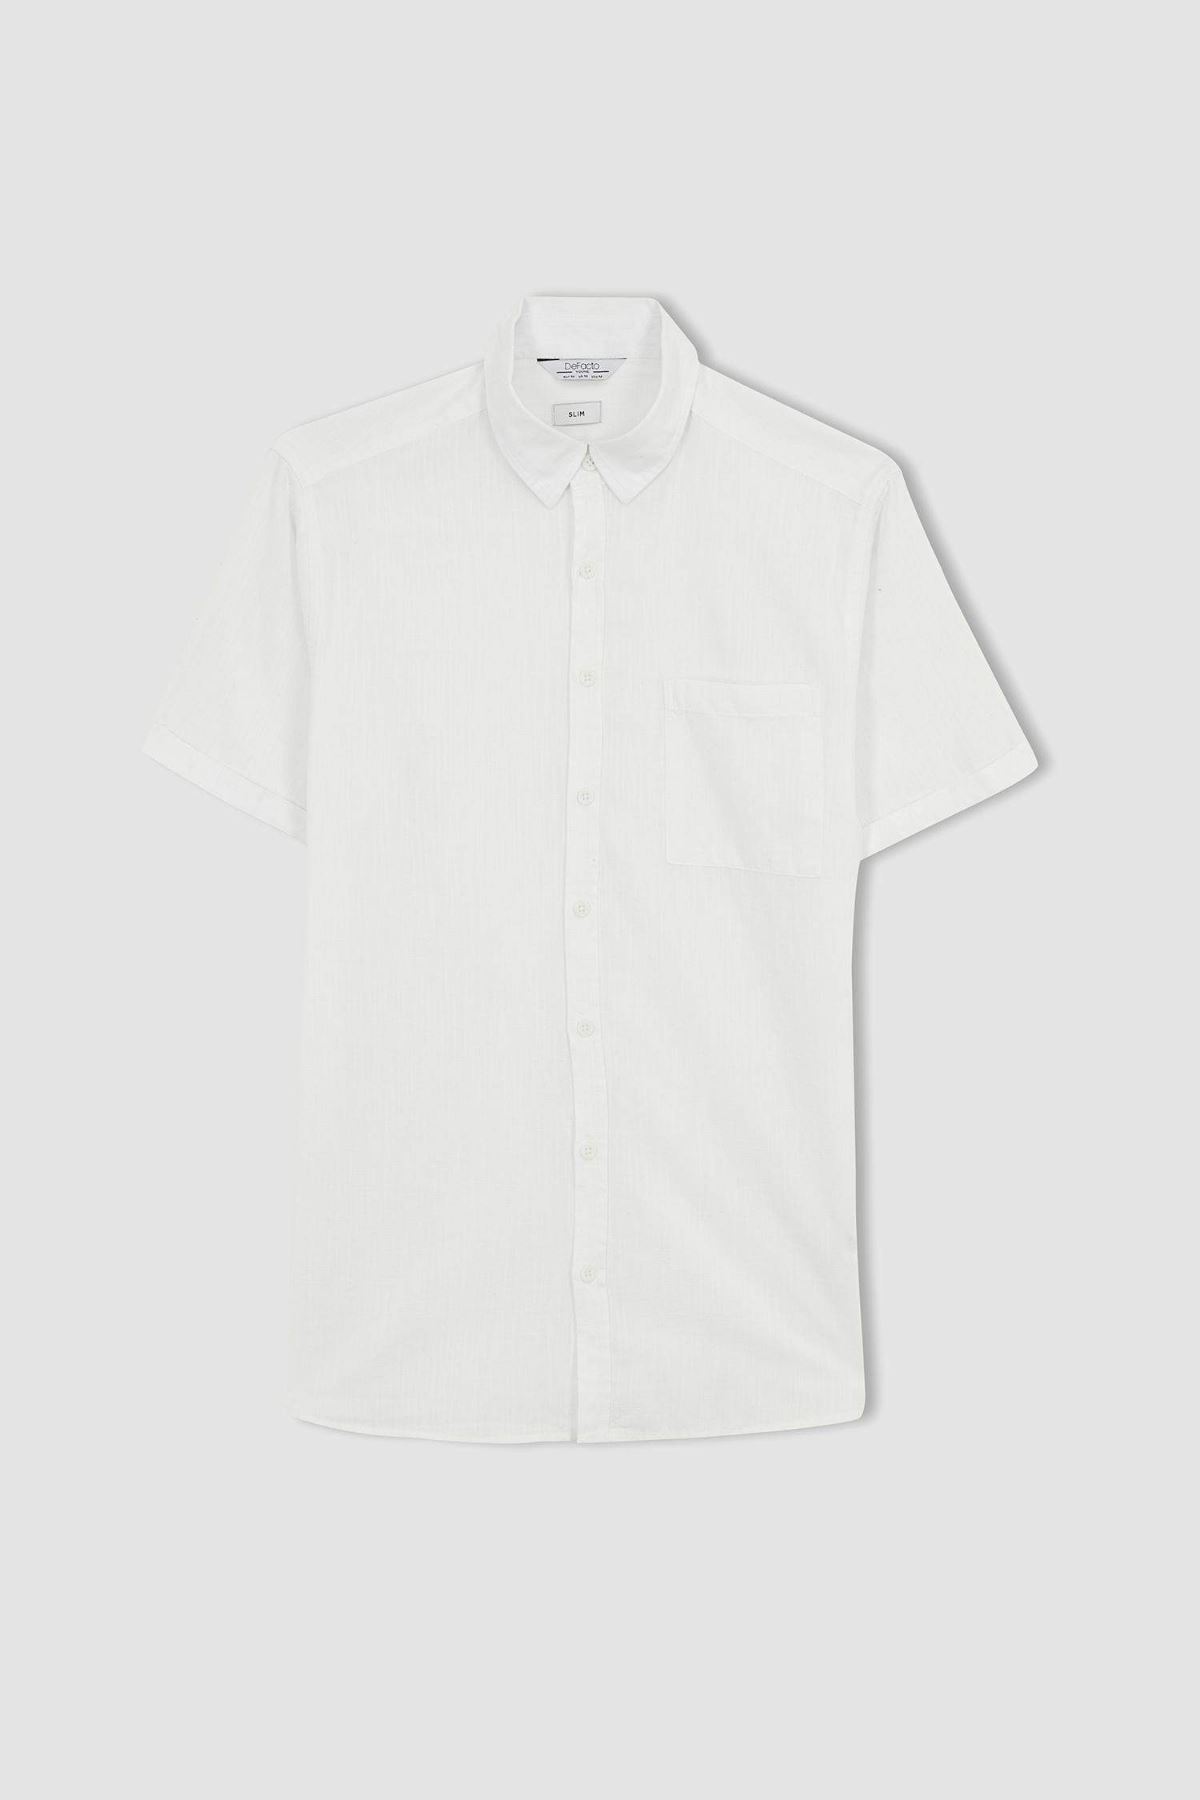 Defacto Erkek Beyaz Gömlek - R1706AZ/WT34